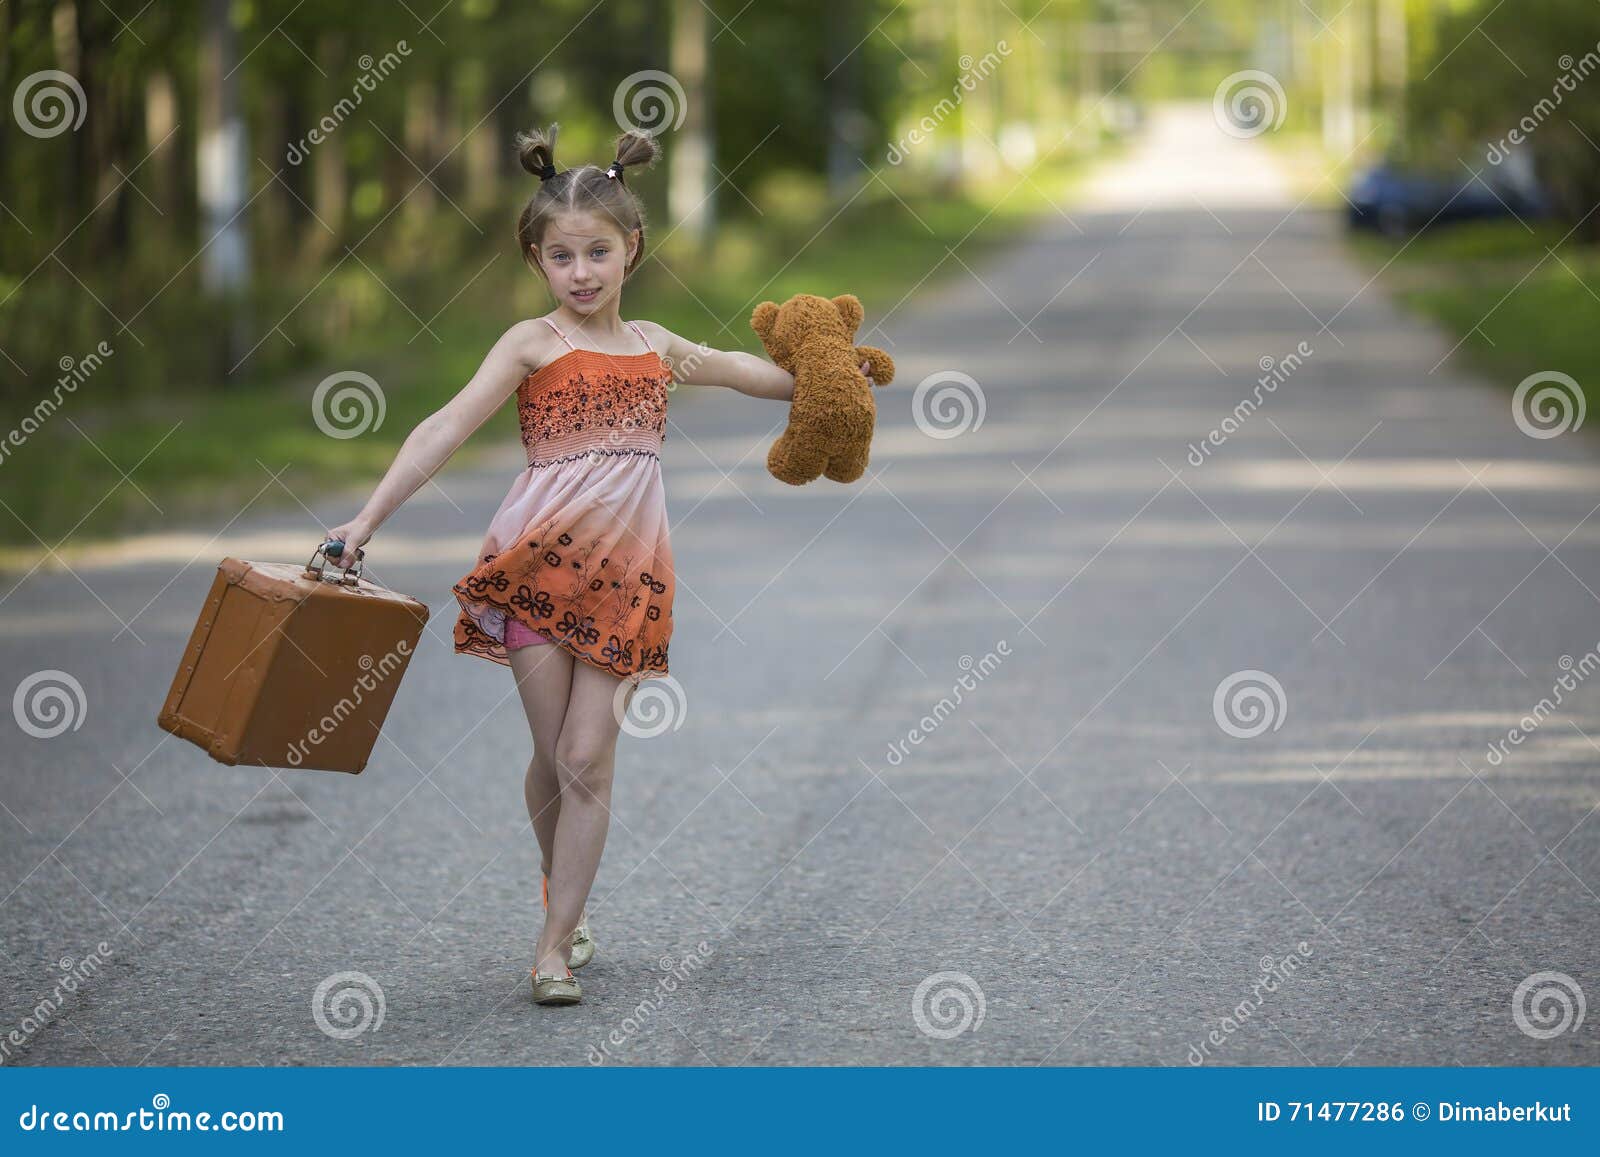 La Bambina Con La Valigia E La Camminata Dell'orsacchiotto è Sulla Strada  Fotografia Stock - Immagine di seduta, obbligazione: 71477286